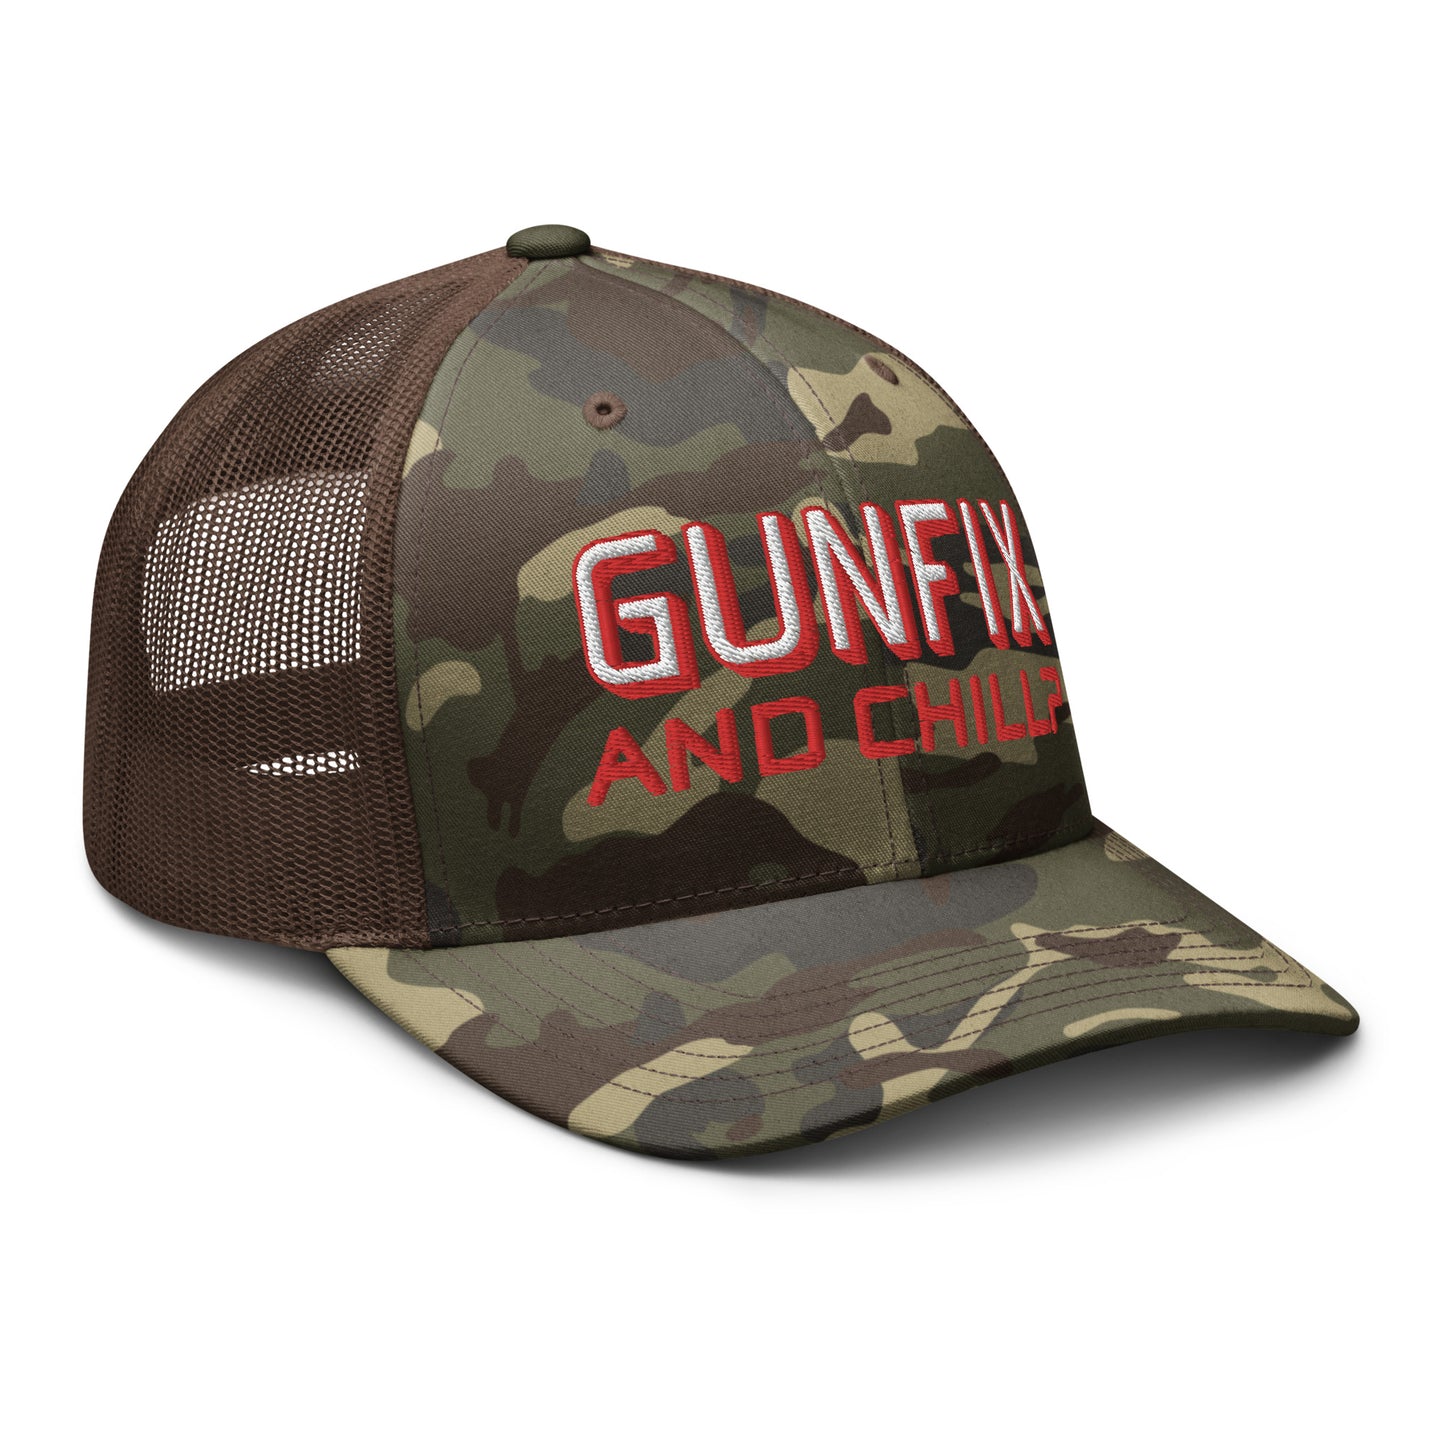 GUNFIX & Chill? Camouflage trucker hat